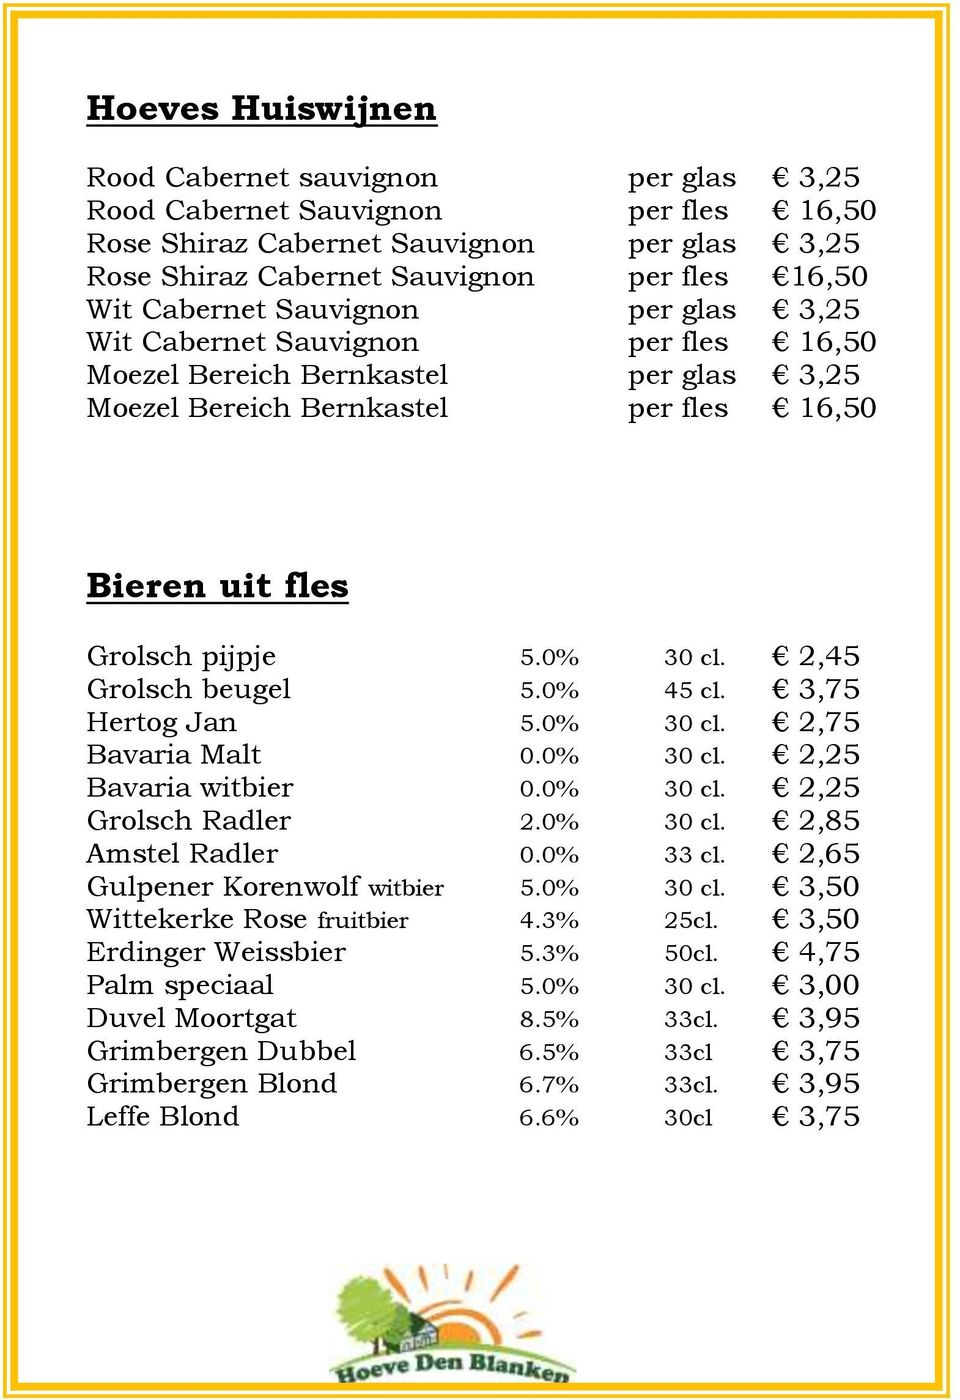 2,45 Grolsch beugel 5.0% 45 cl. 3,75 Hertog Jan 5.0% 30 cl. 2,75 Bavaria Malt 0.0% 30 cl. 2,25 Bavaria witbier 0.0% 30 cl. 2,25 Grolsch Radler 2.0% 30 cl. 2,85 Amstel Radler 0.0% 33 cl.